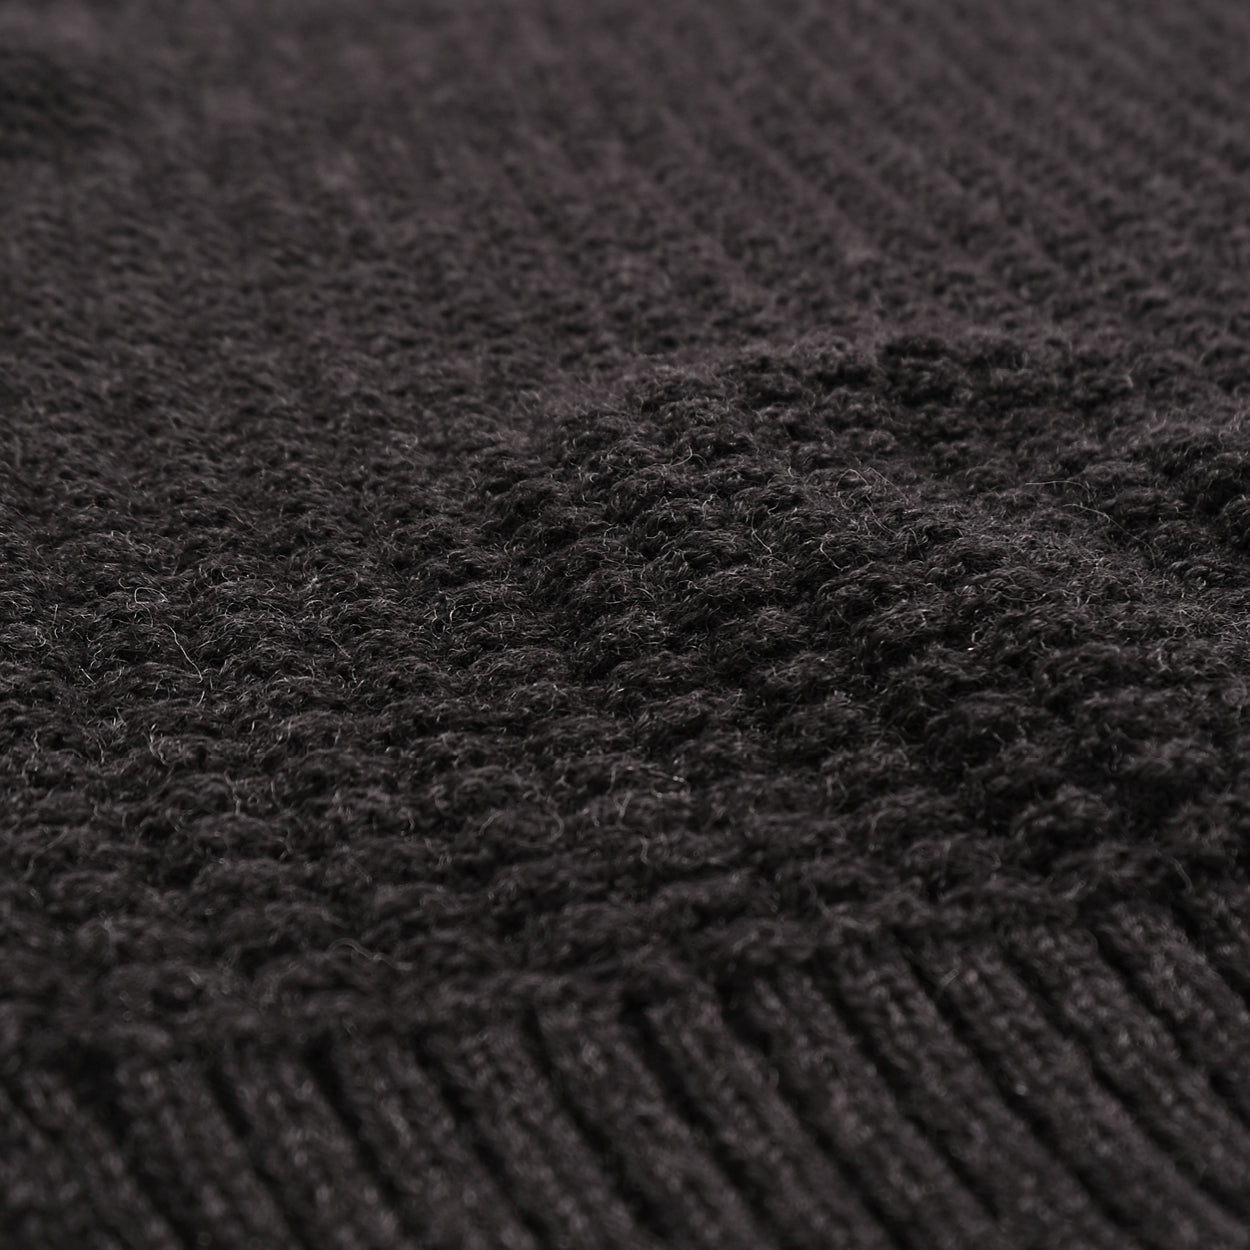 Waffle-Knit Wool Sweater